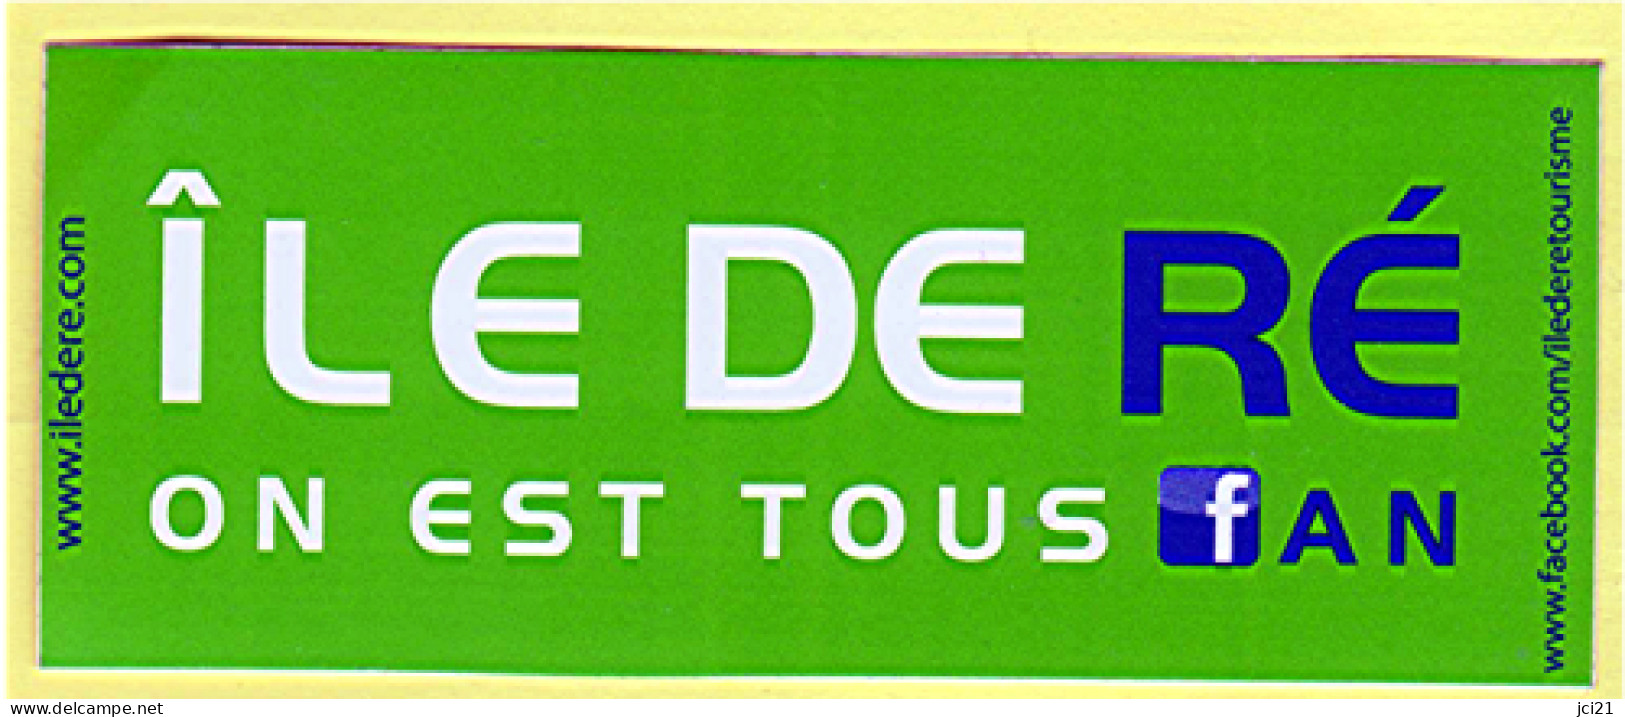 Autocollant  "ILE DE RE " (1005)_D250 - Stickers